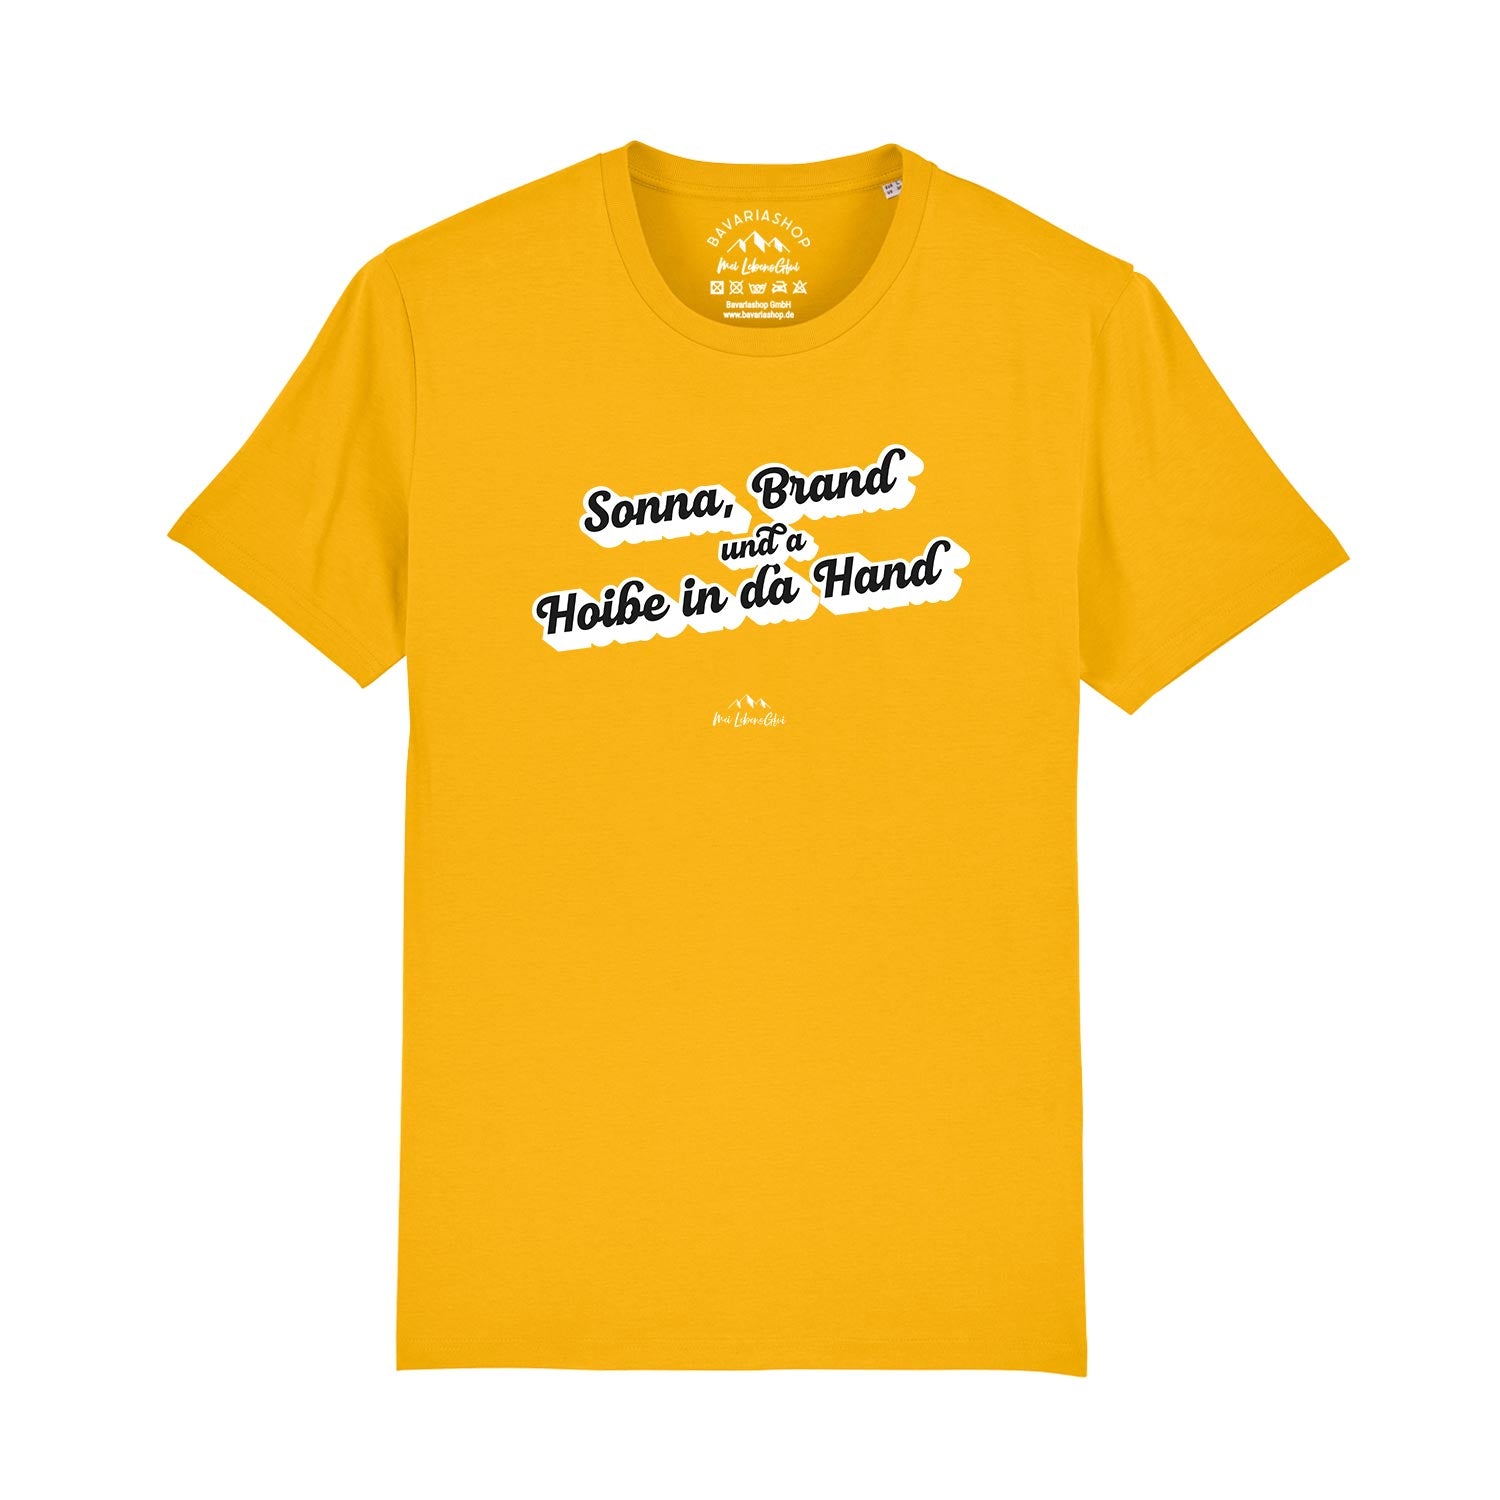 Herren T-Shirt "Sonna, Brand und a Hoibe in da Hand"